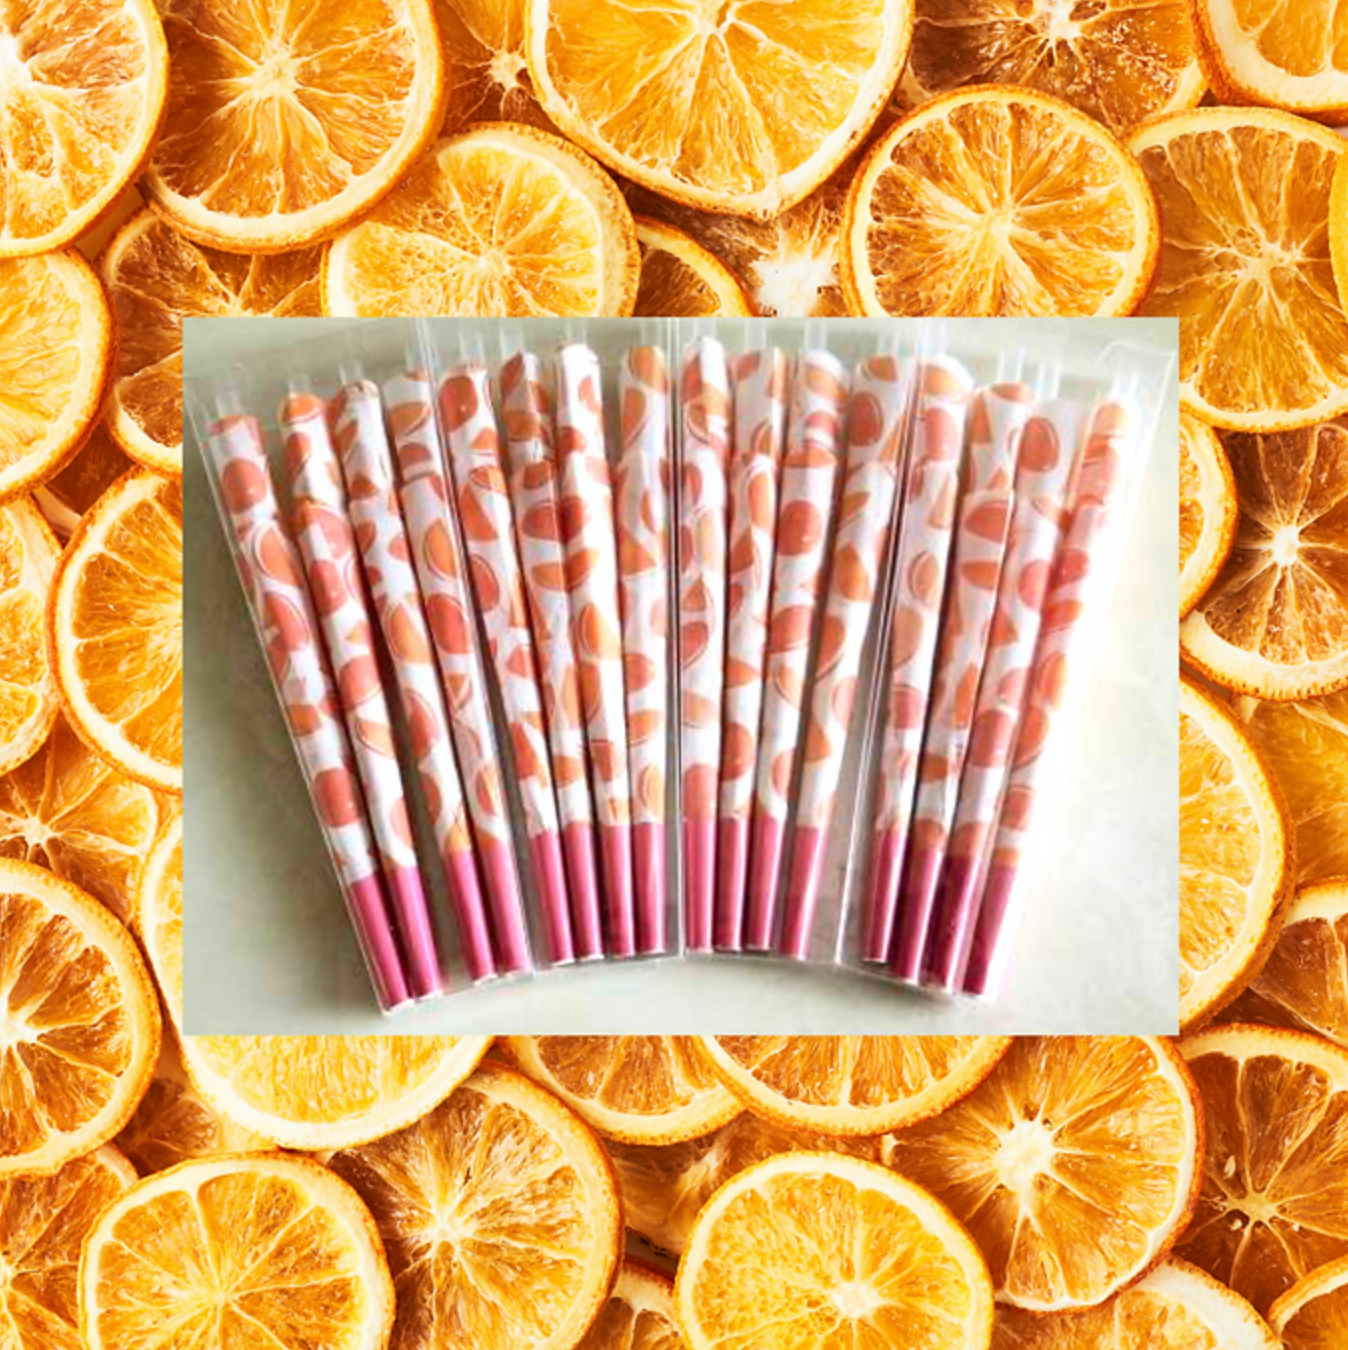 Orange flavored cones